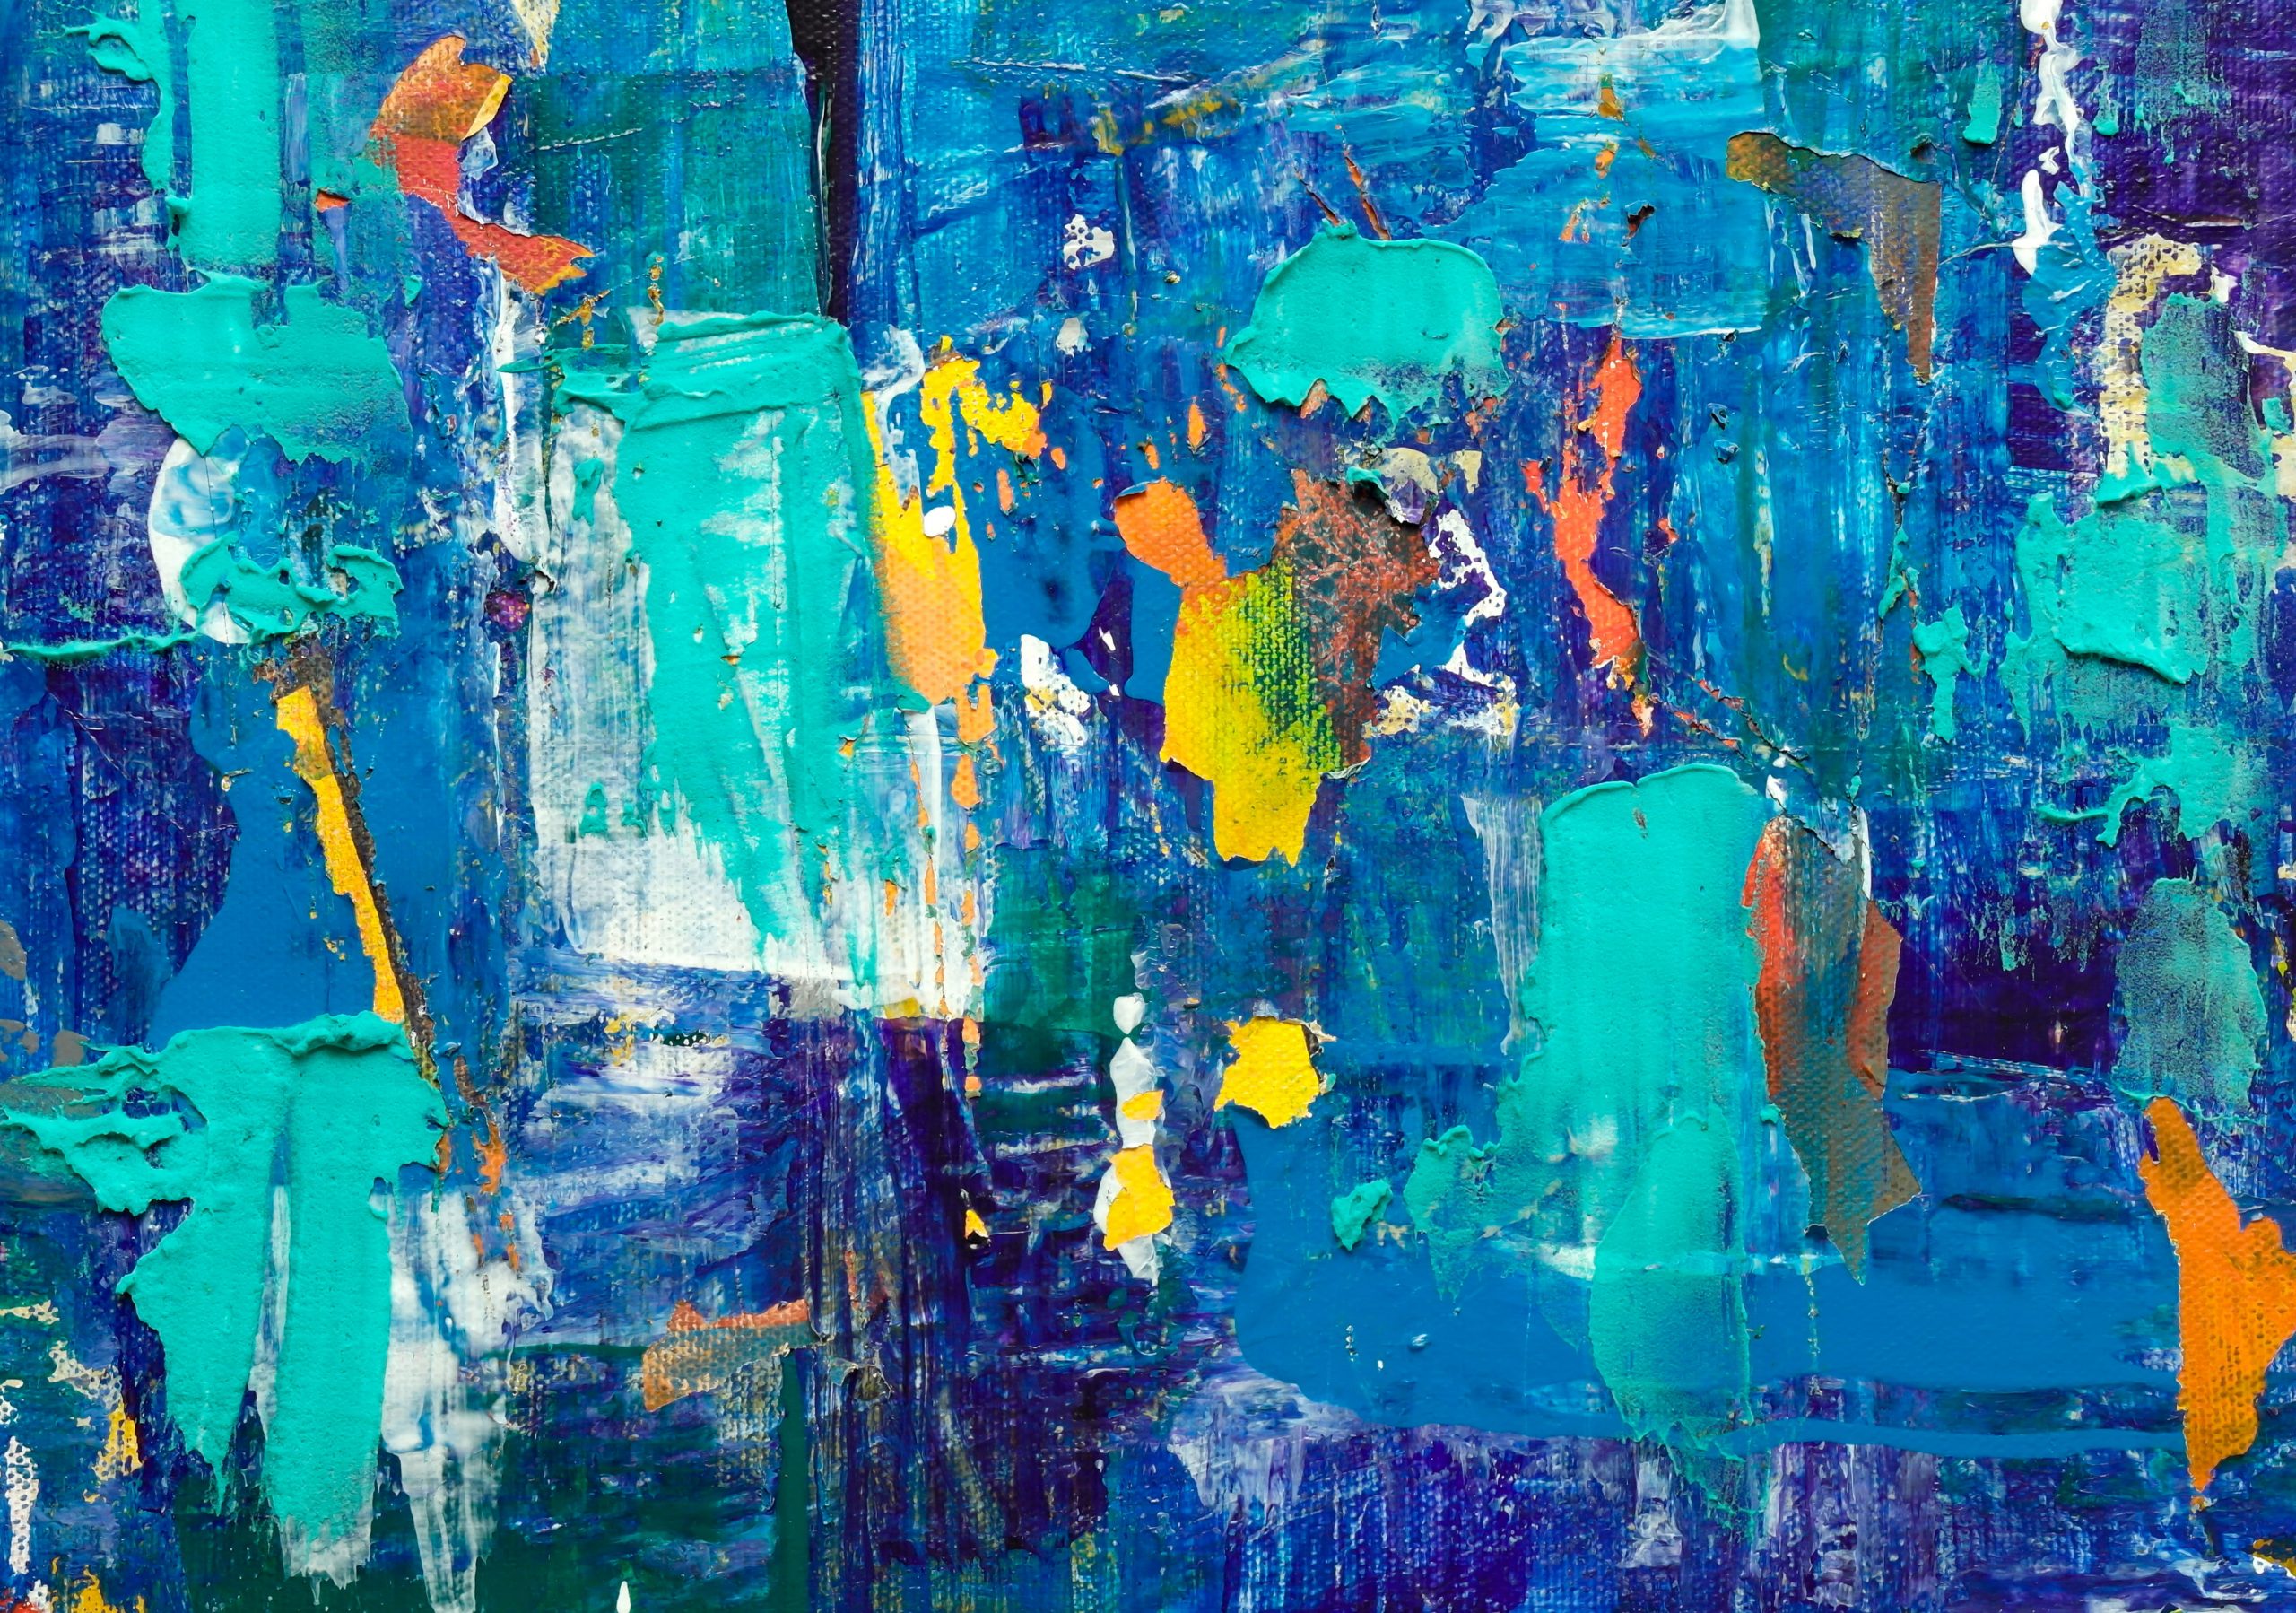 Blue abstract painting wallpaper, modern art, wall art, wallpaper, background